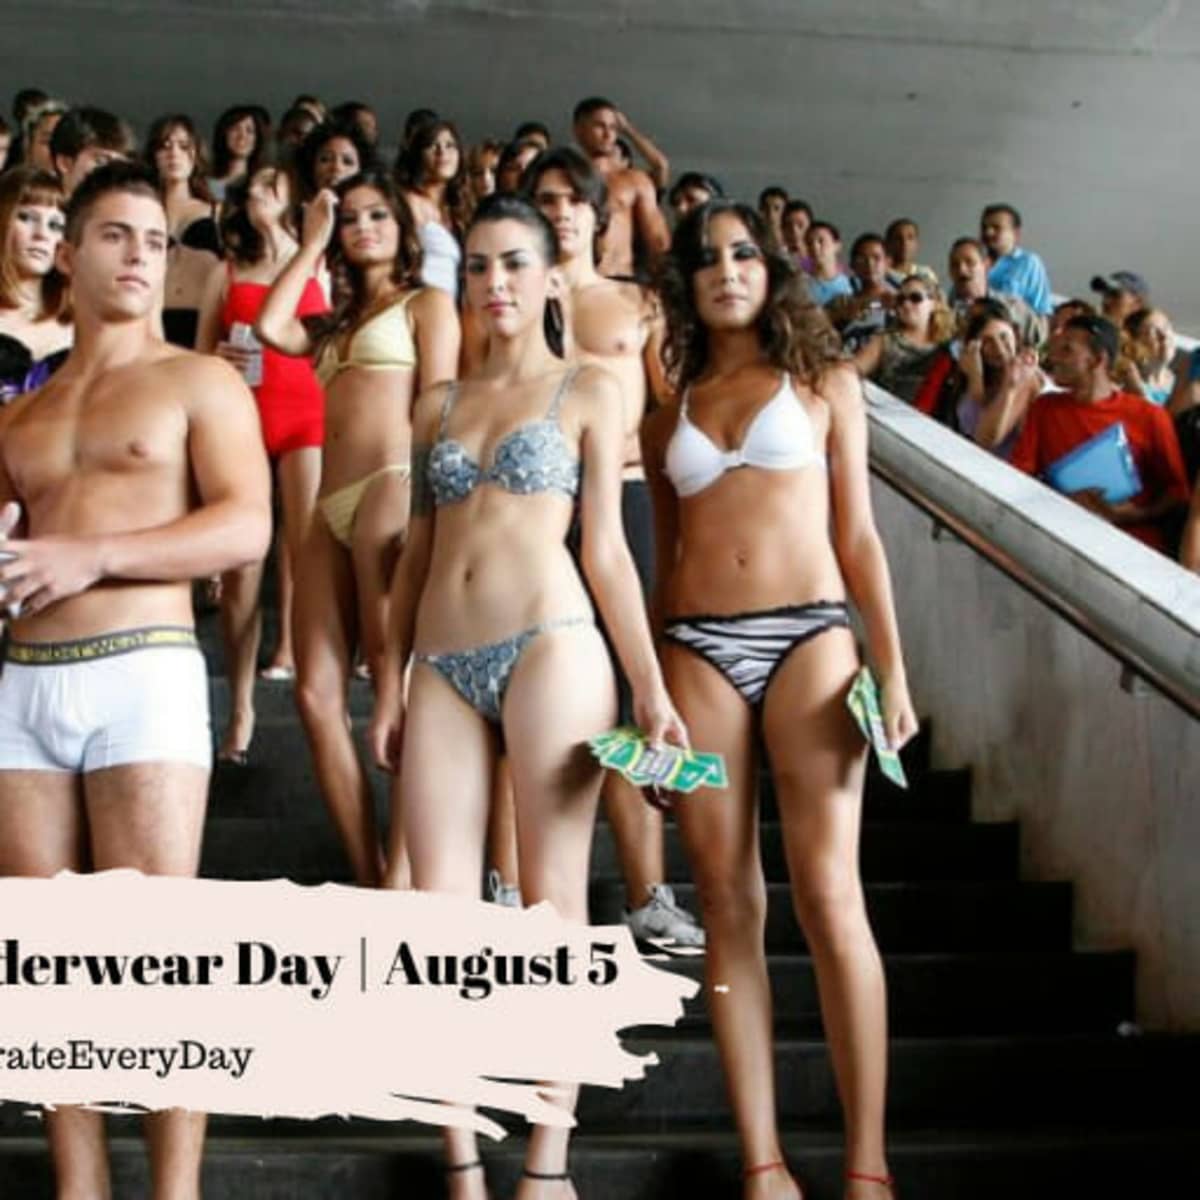 storybookstephanie: Underwear theme National Underwear Day August